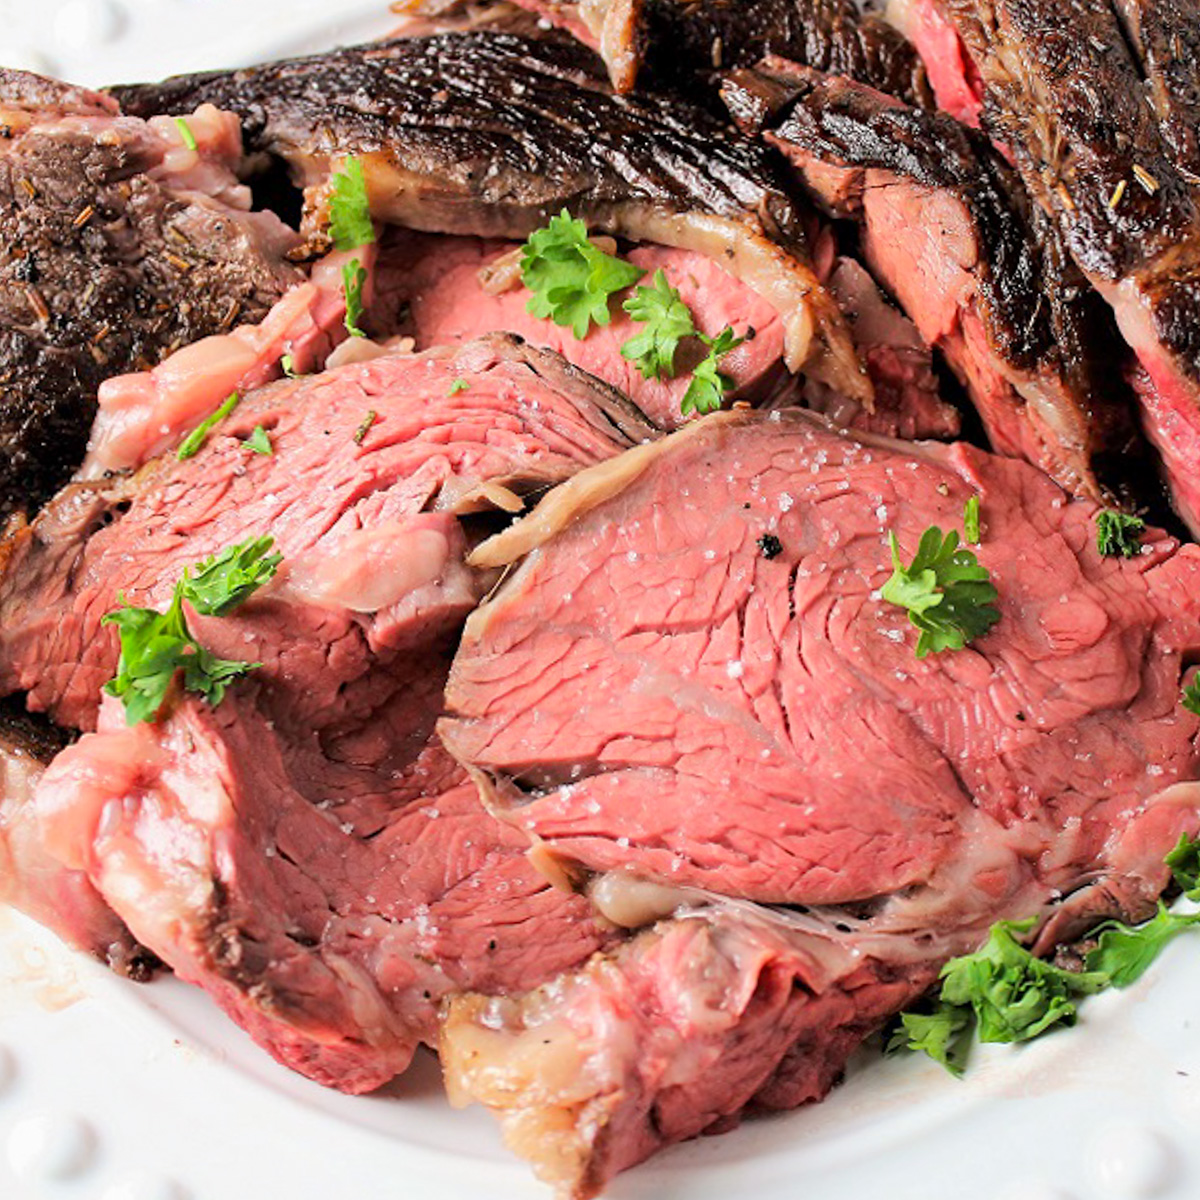 sliced prime rib roast on plate.